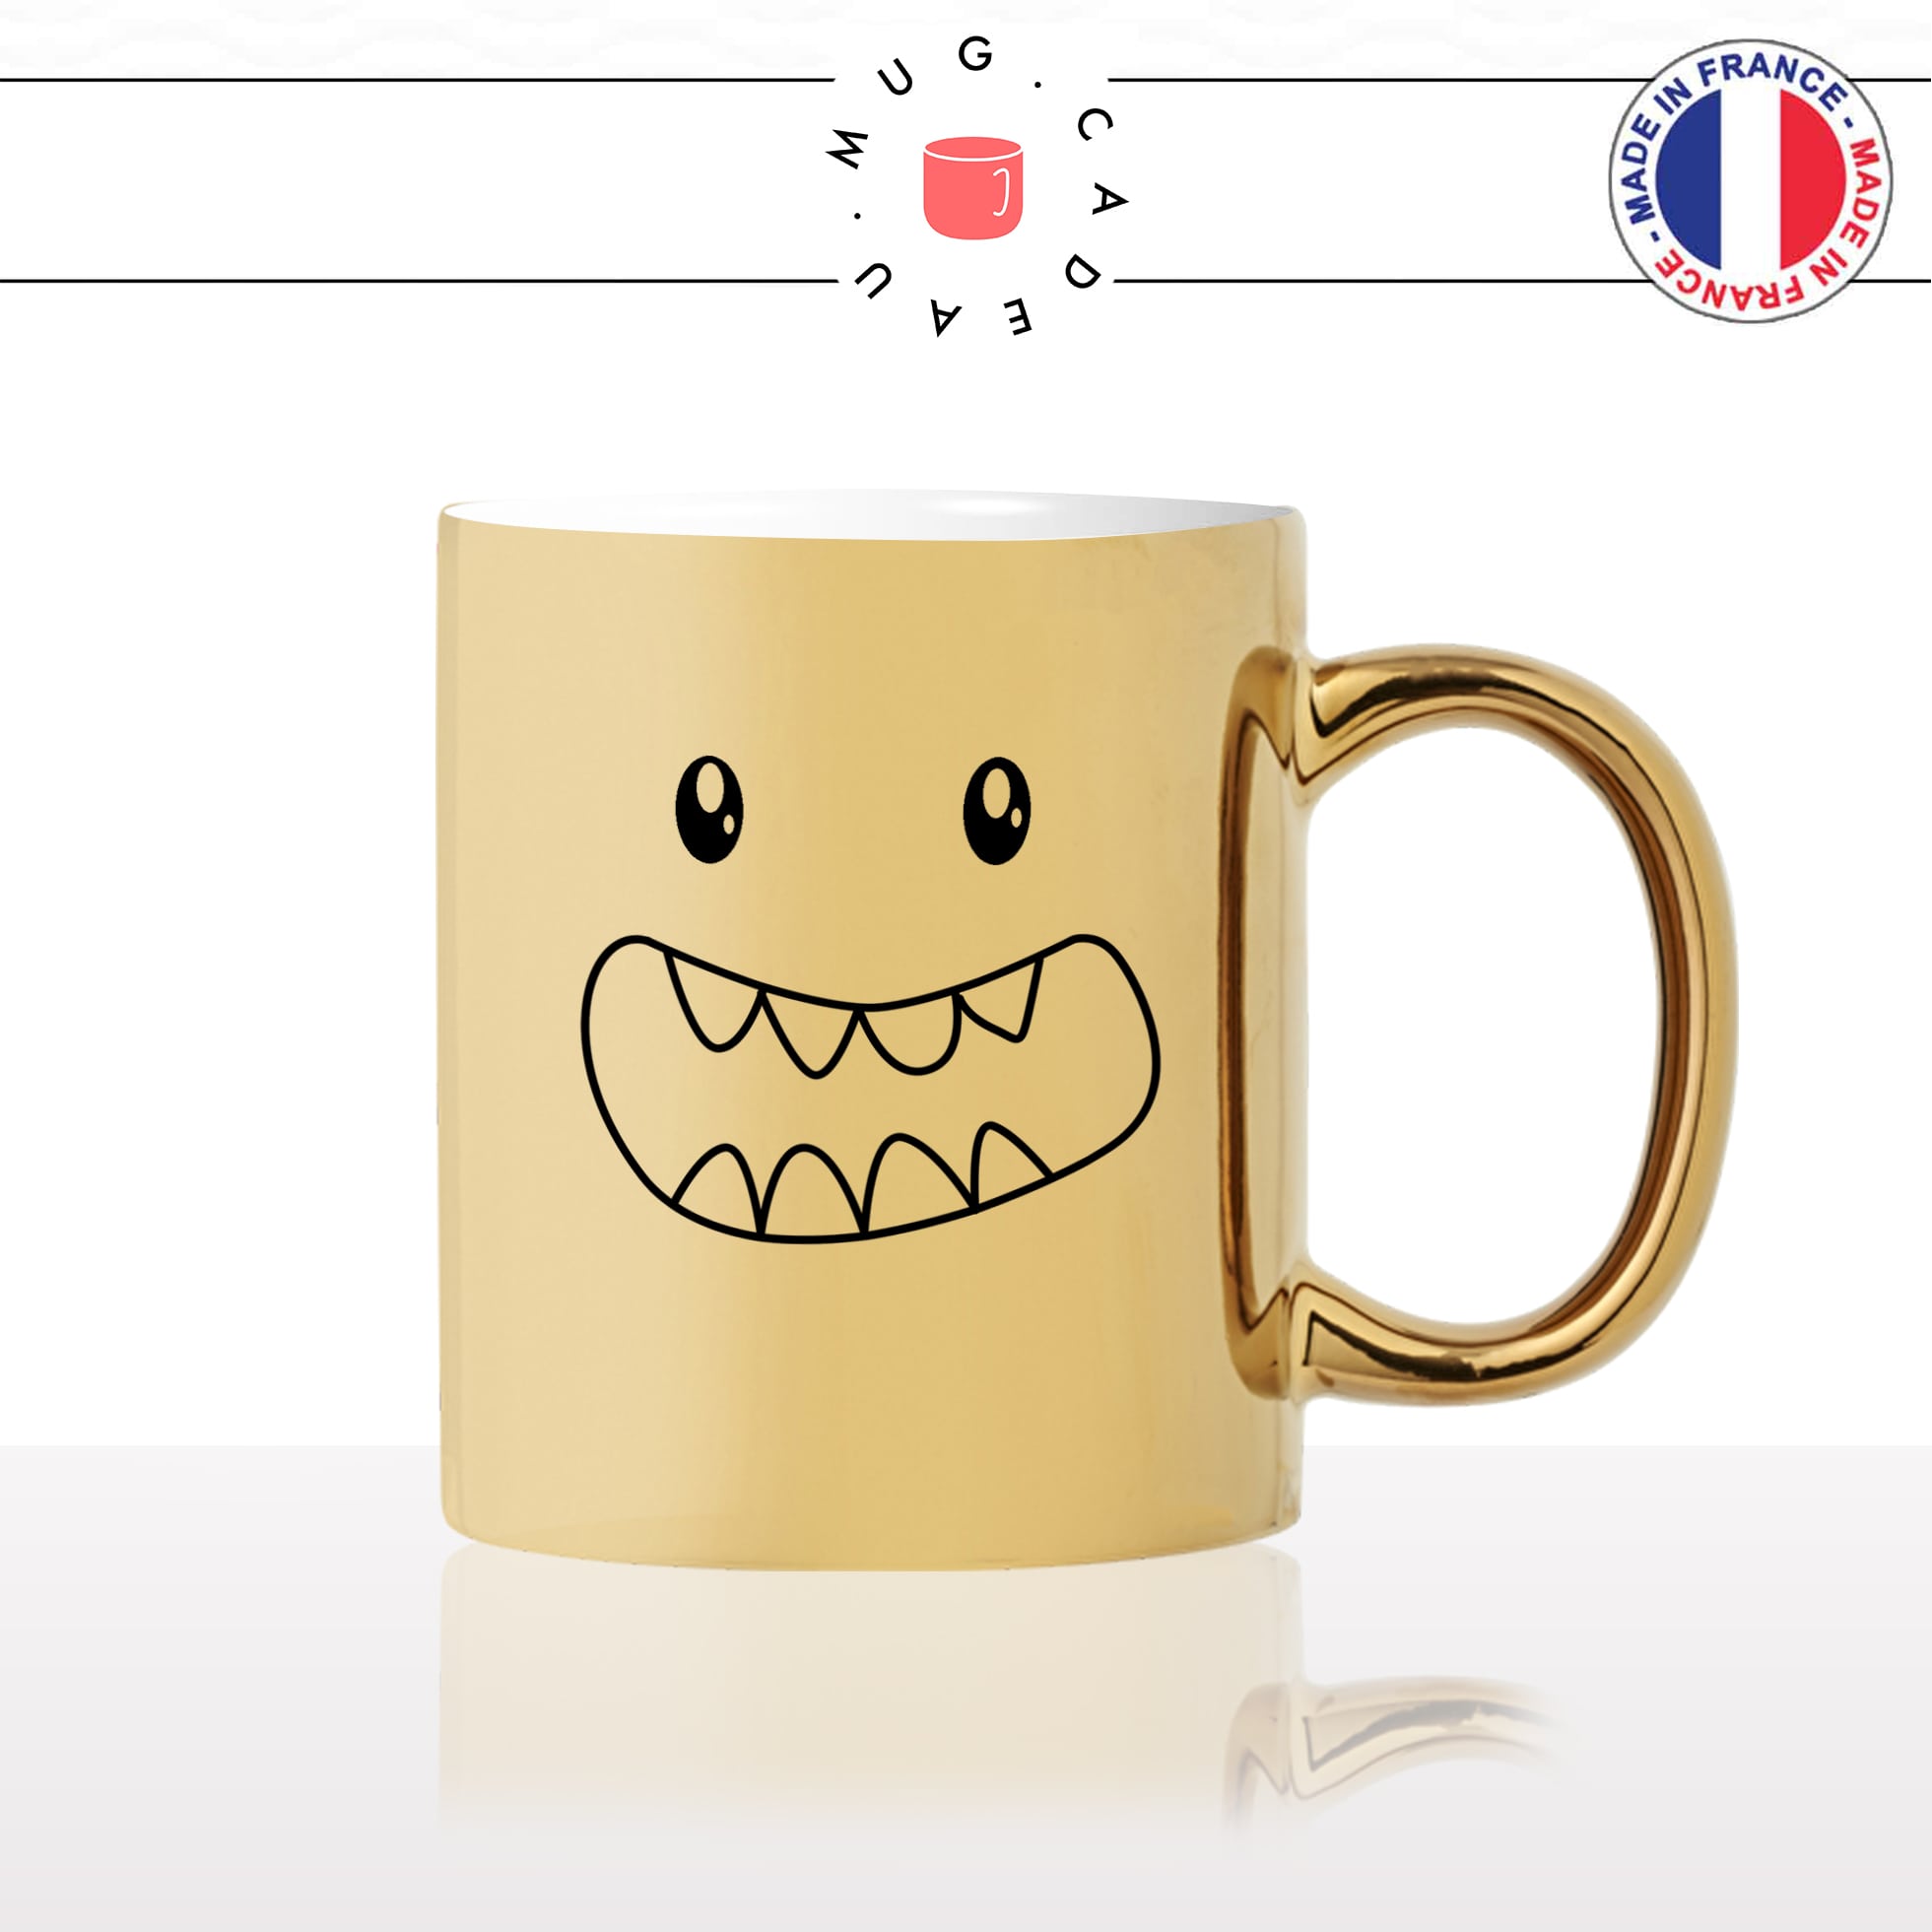 mug-tasse-or-doré-monstre-gentil-dents-enfant-kawaii-dessin-mignon-animal-noir-fun-café-thé-idée-cadeau-original-personnalisé-gold2-min